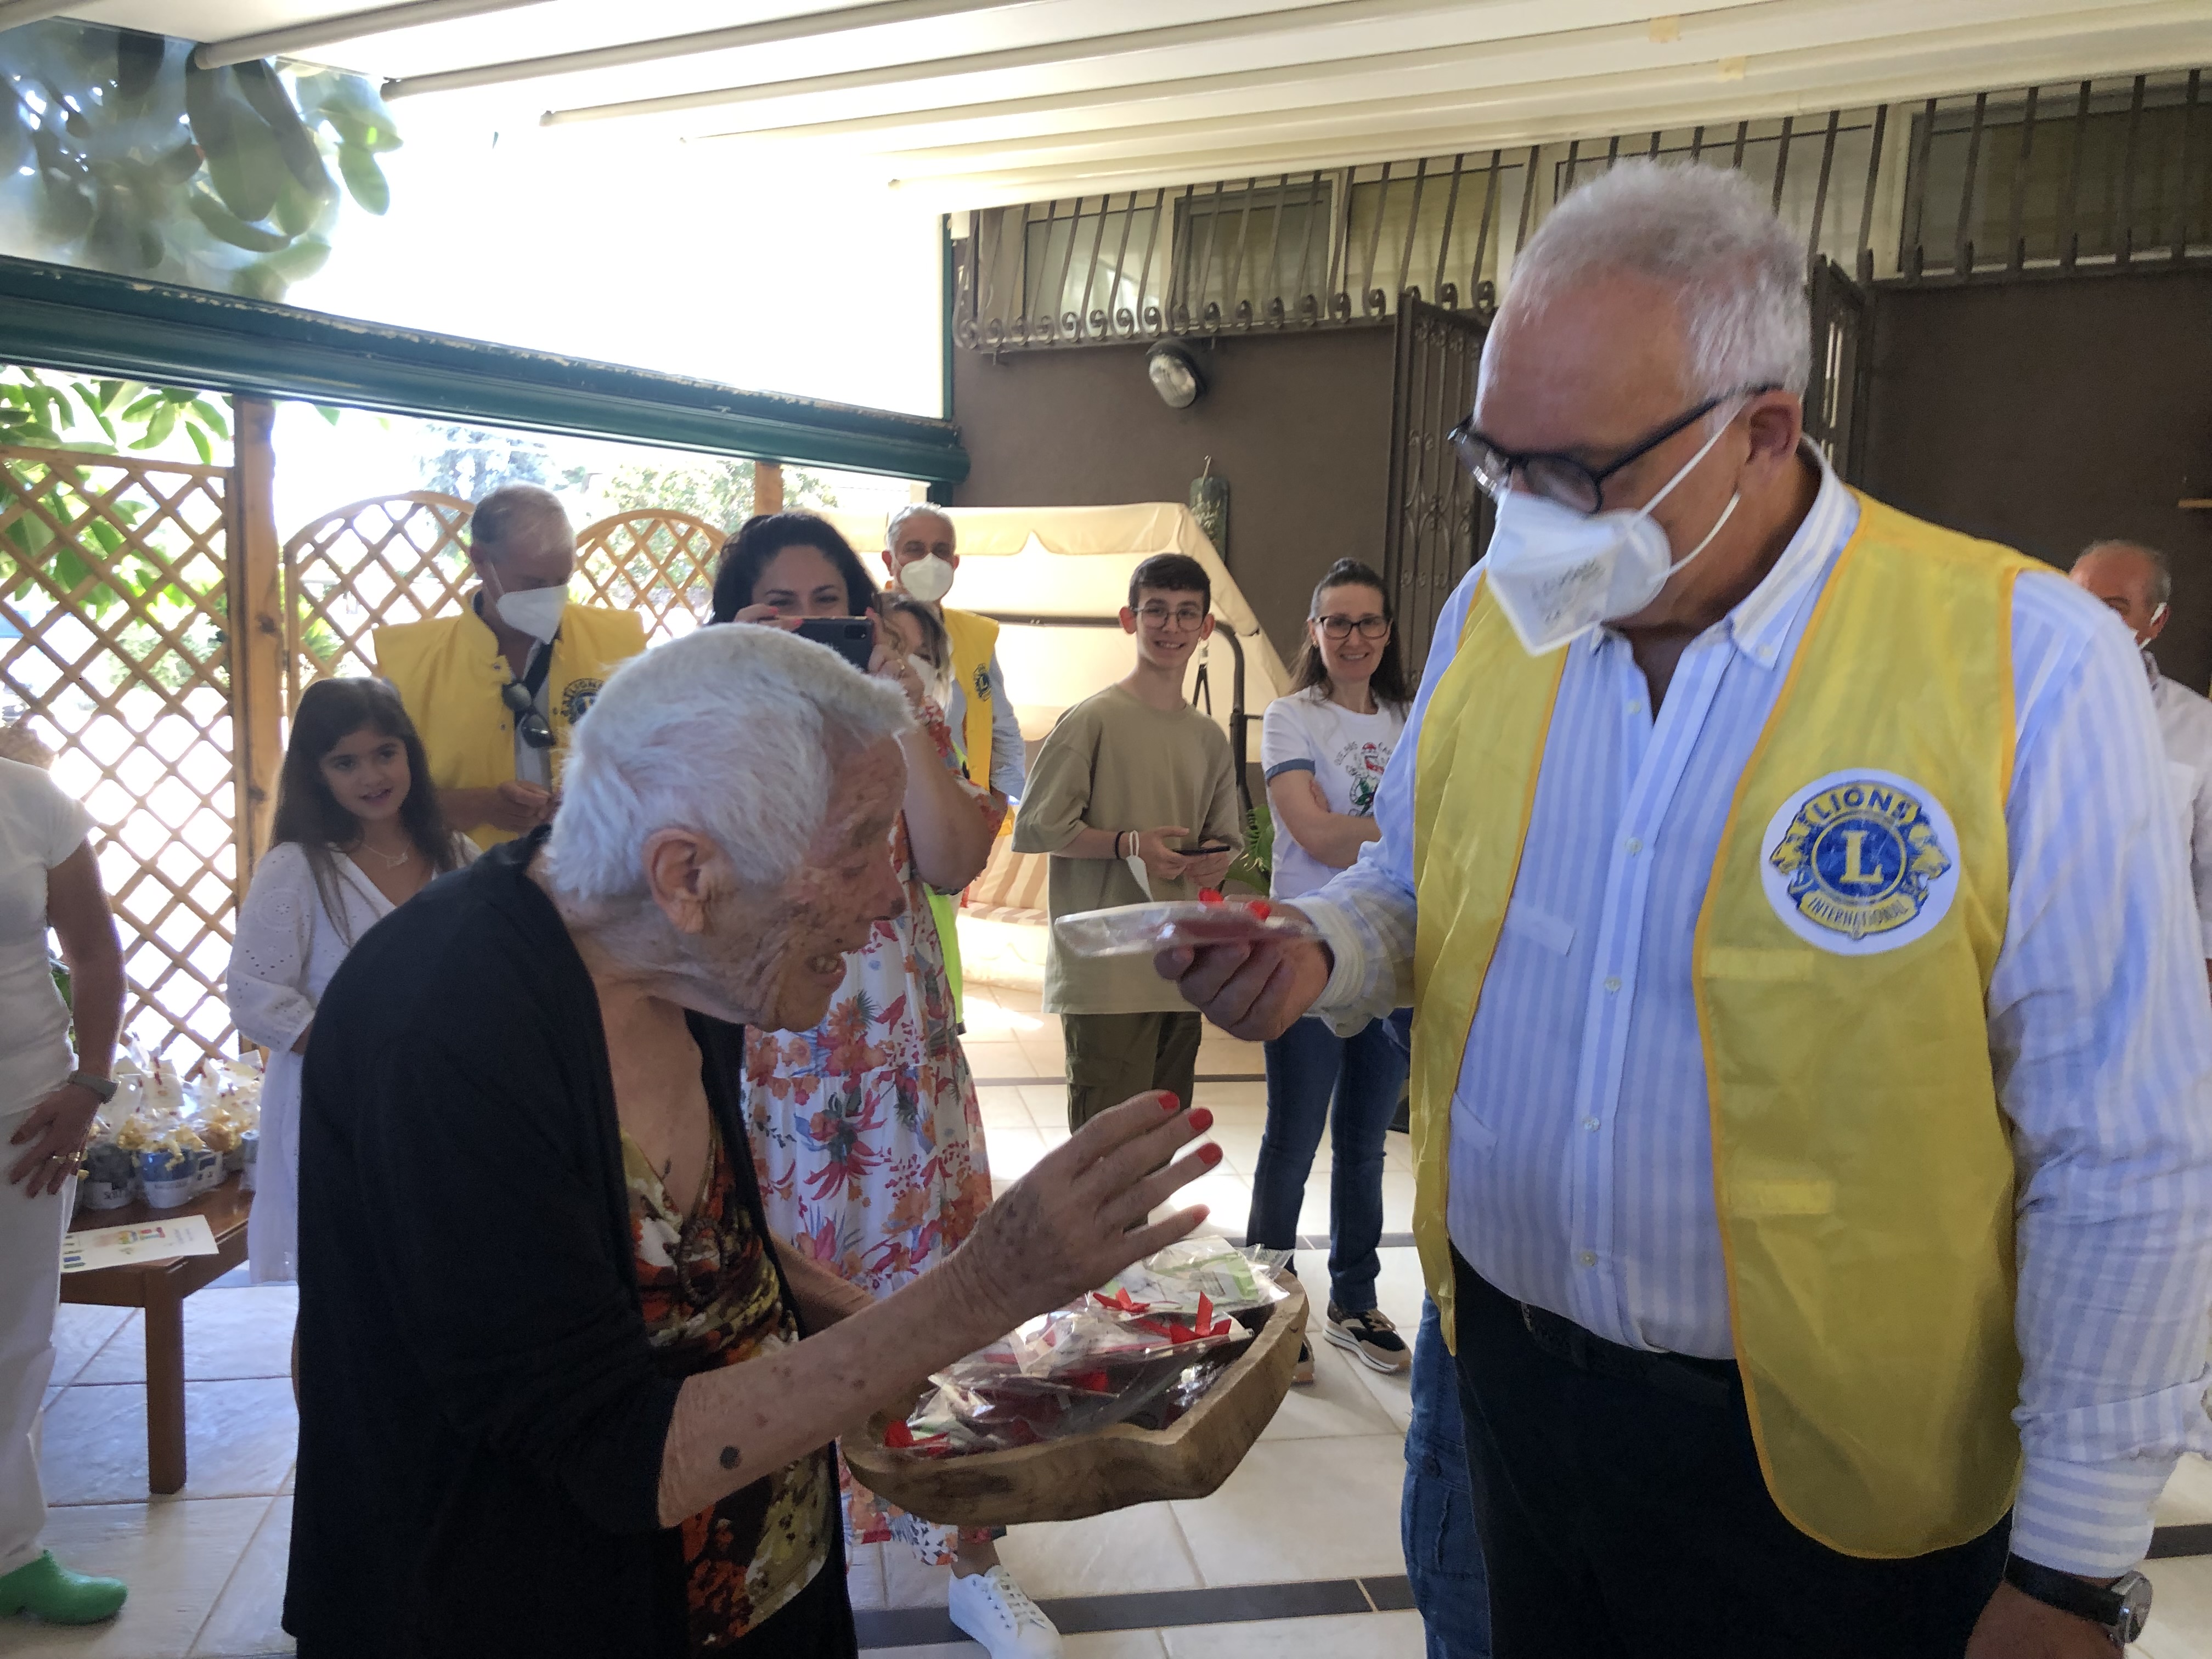 Festa dei Nonni il 2 ottobre: offerto il pranzo agli anziani ospiti di una casa di riposo